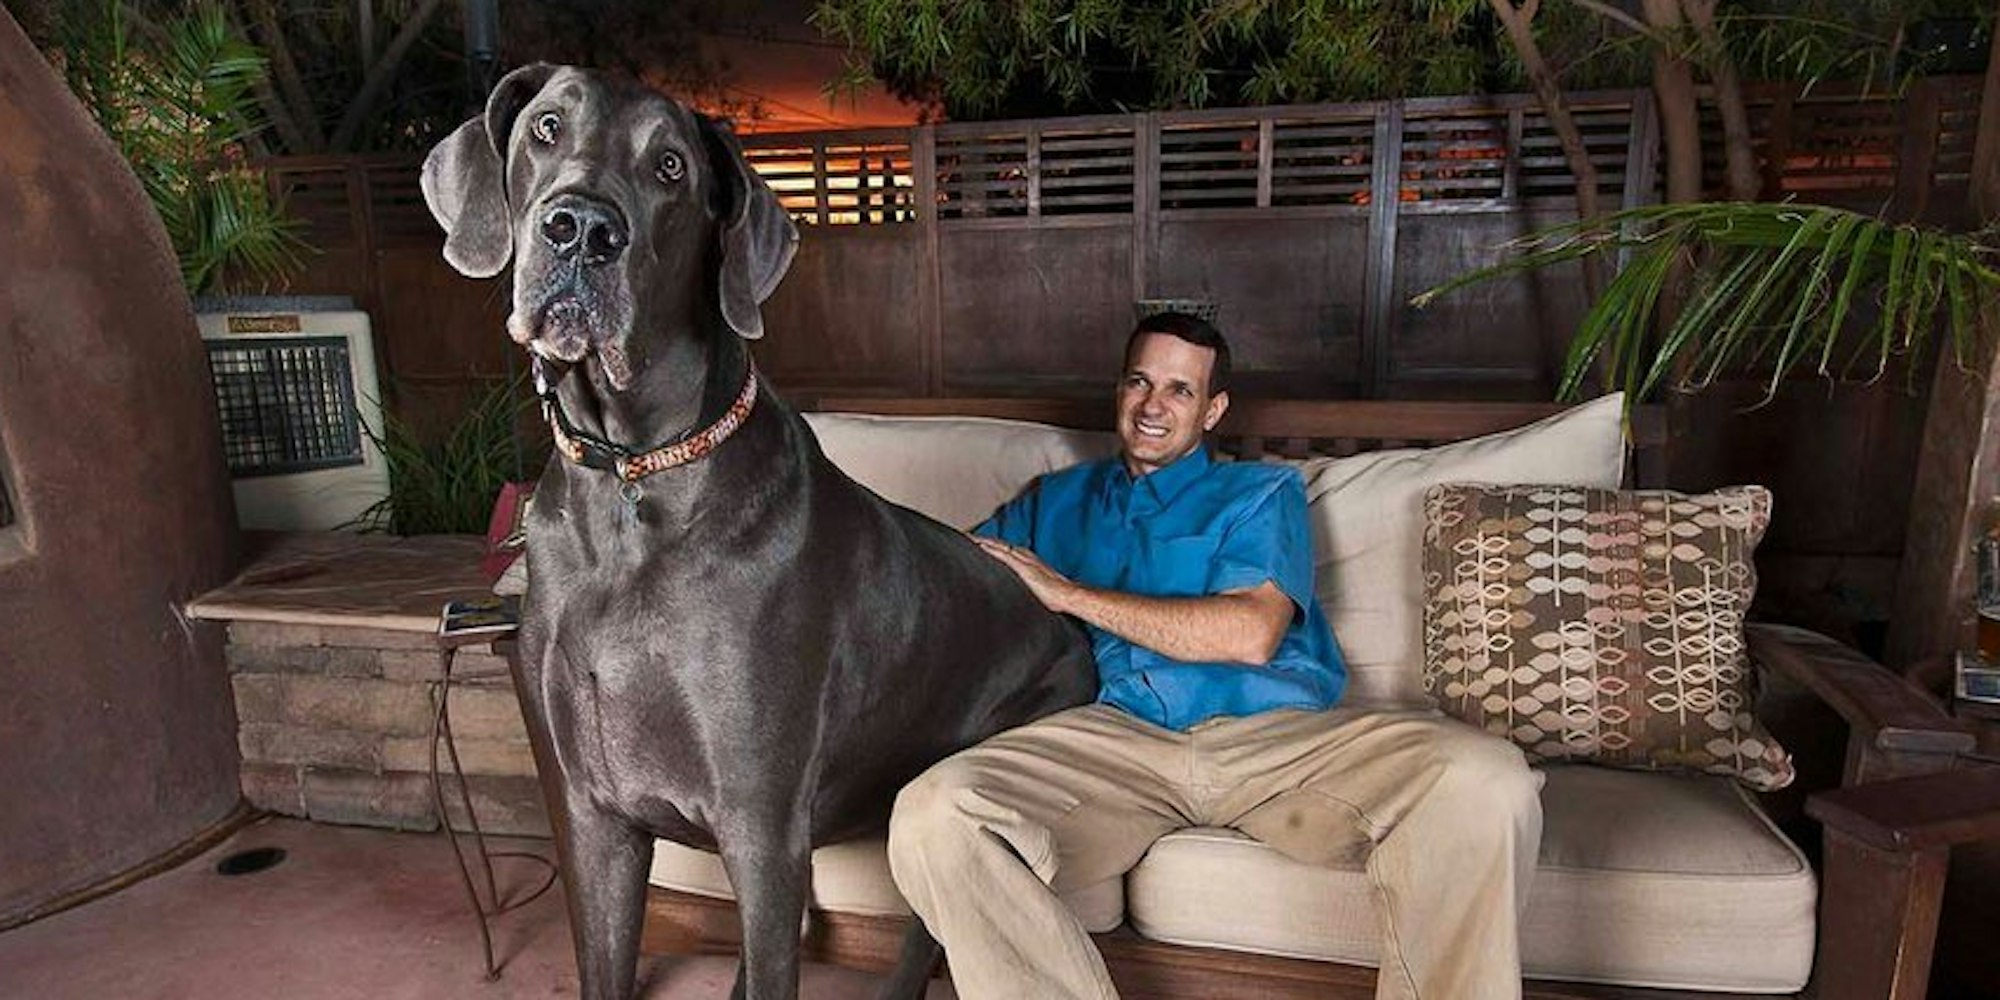 Er wog 111 Kilo, war 1,09 Meter groß und brachte es auf eine Länge von 2,20 Meter: Giant George, für zwei Jahre größter Hund der Welt, ist im Alter von knapp acht Jahren in den USA gestorben.